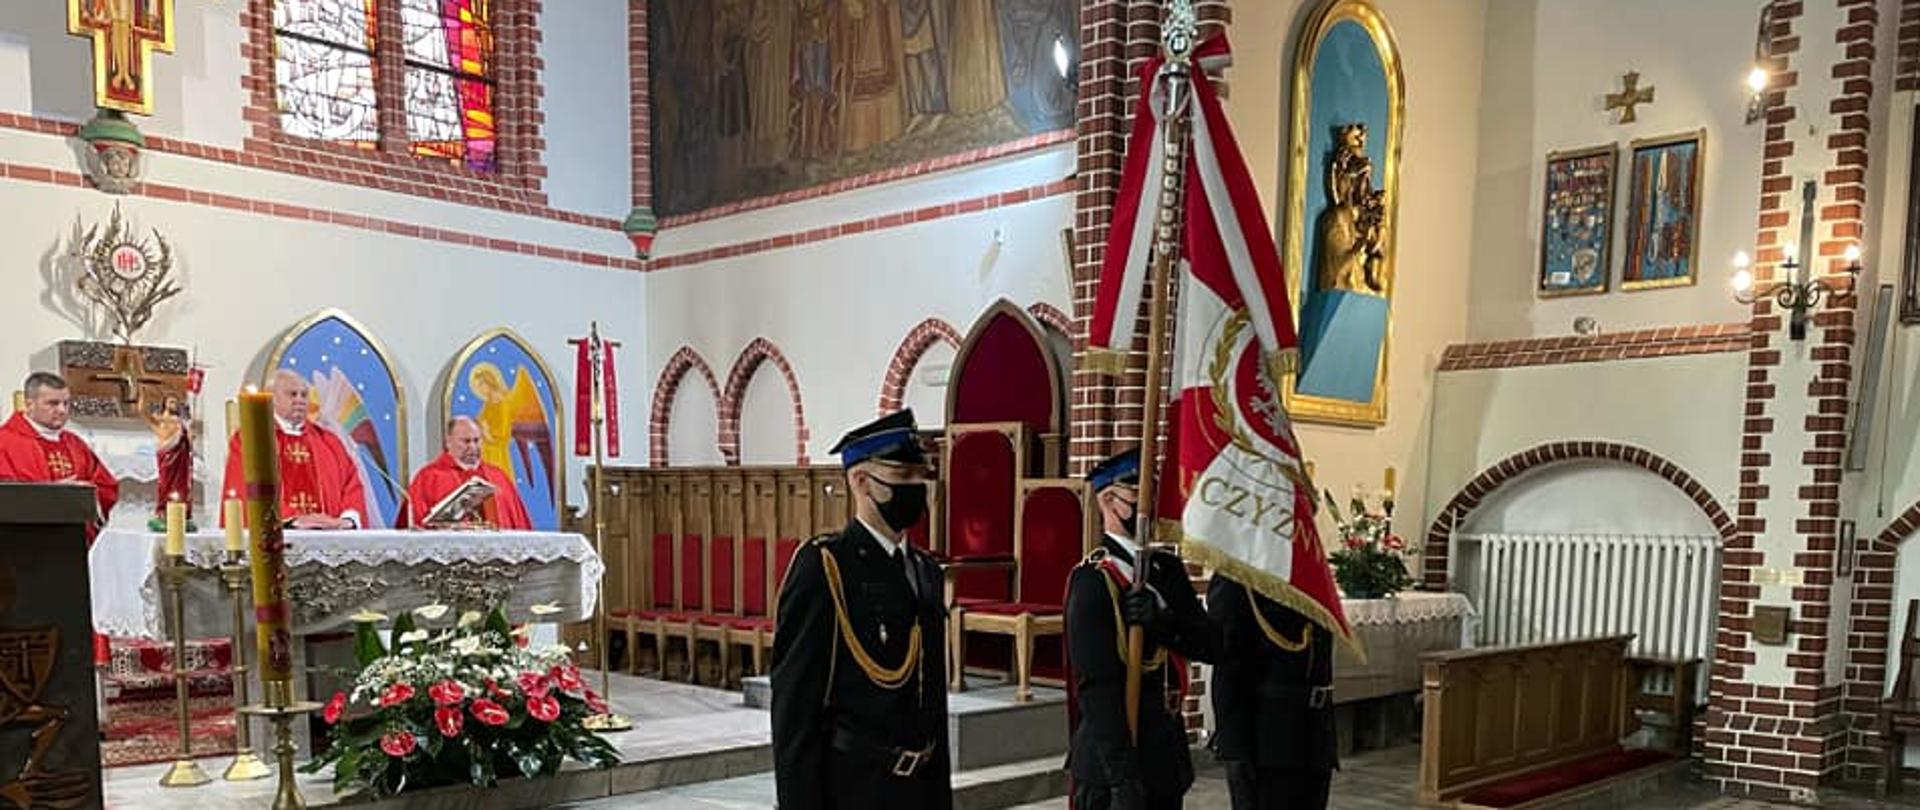 Poczet sztandarowy podczas w wyjścia z kościoła. Sztandar podniesiony na tle ołtarza, na ołtarzu księża celebrujący mszę.